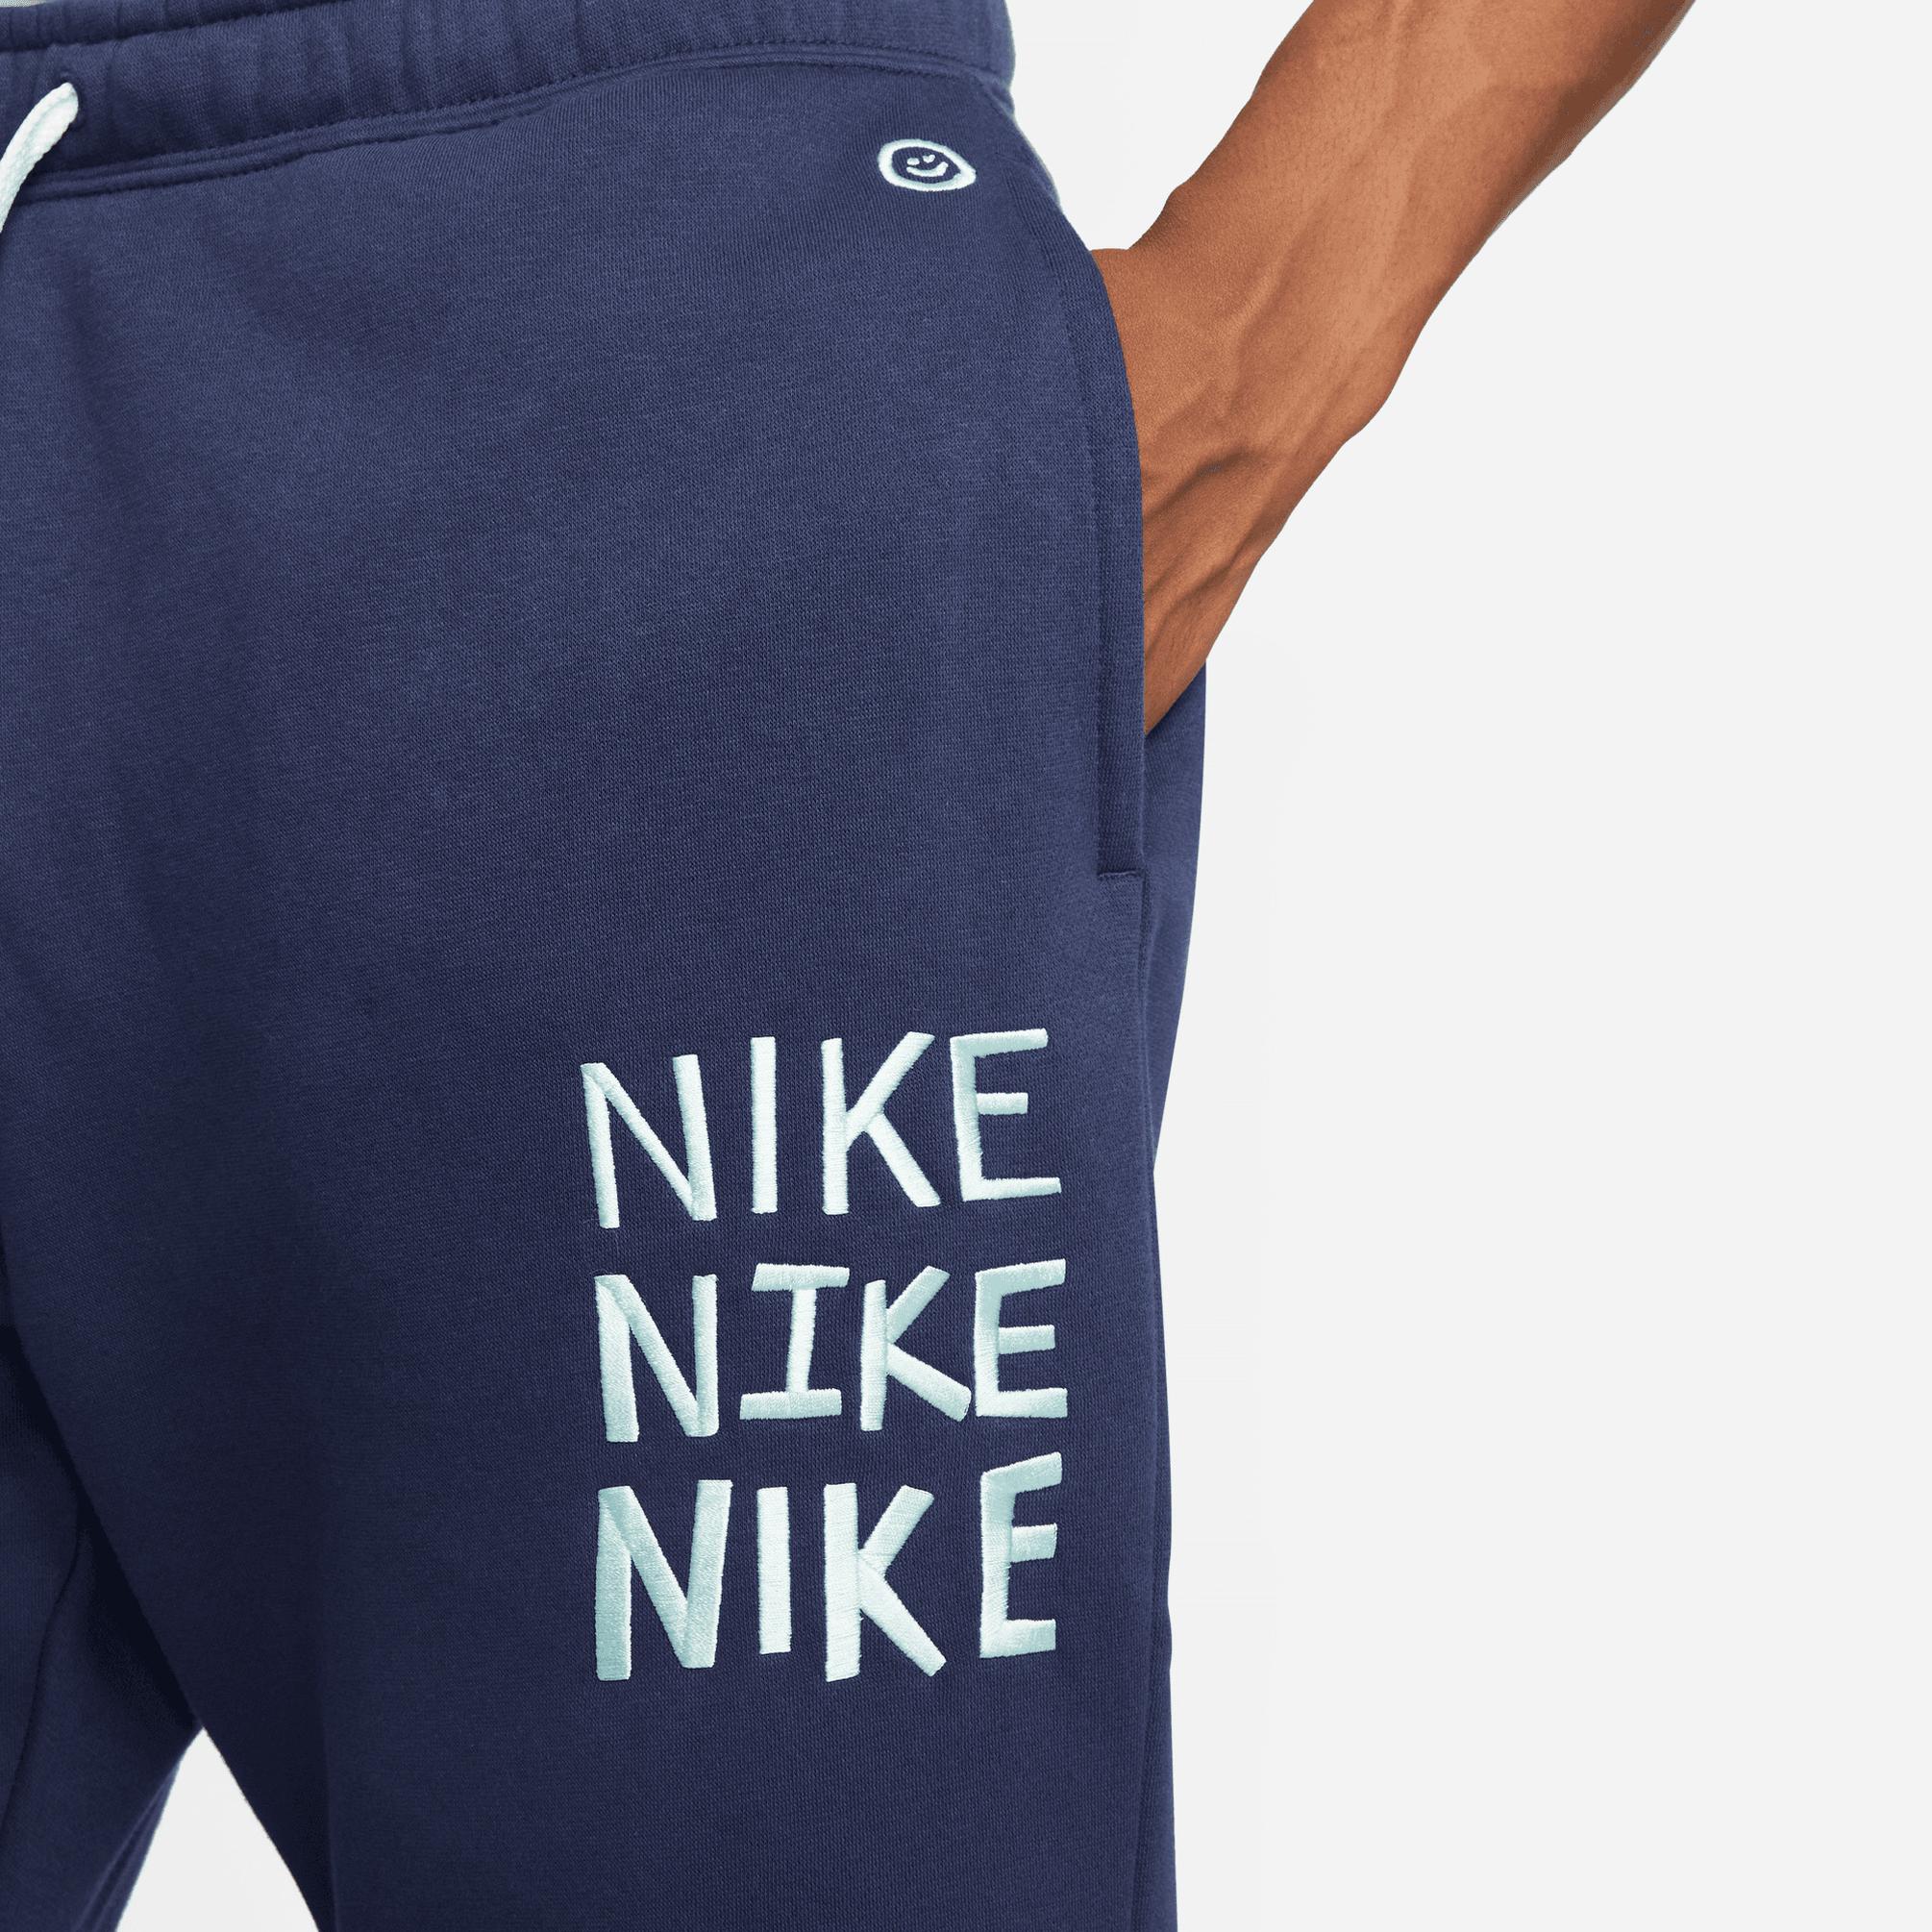  Nike Sportswear Hbr-C Erkek Lacivert Eşofman Altı